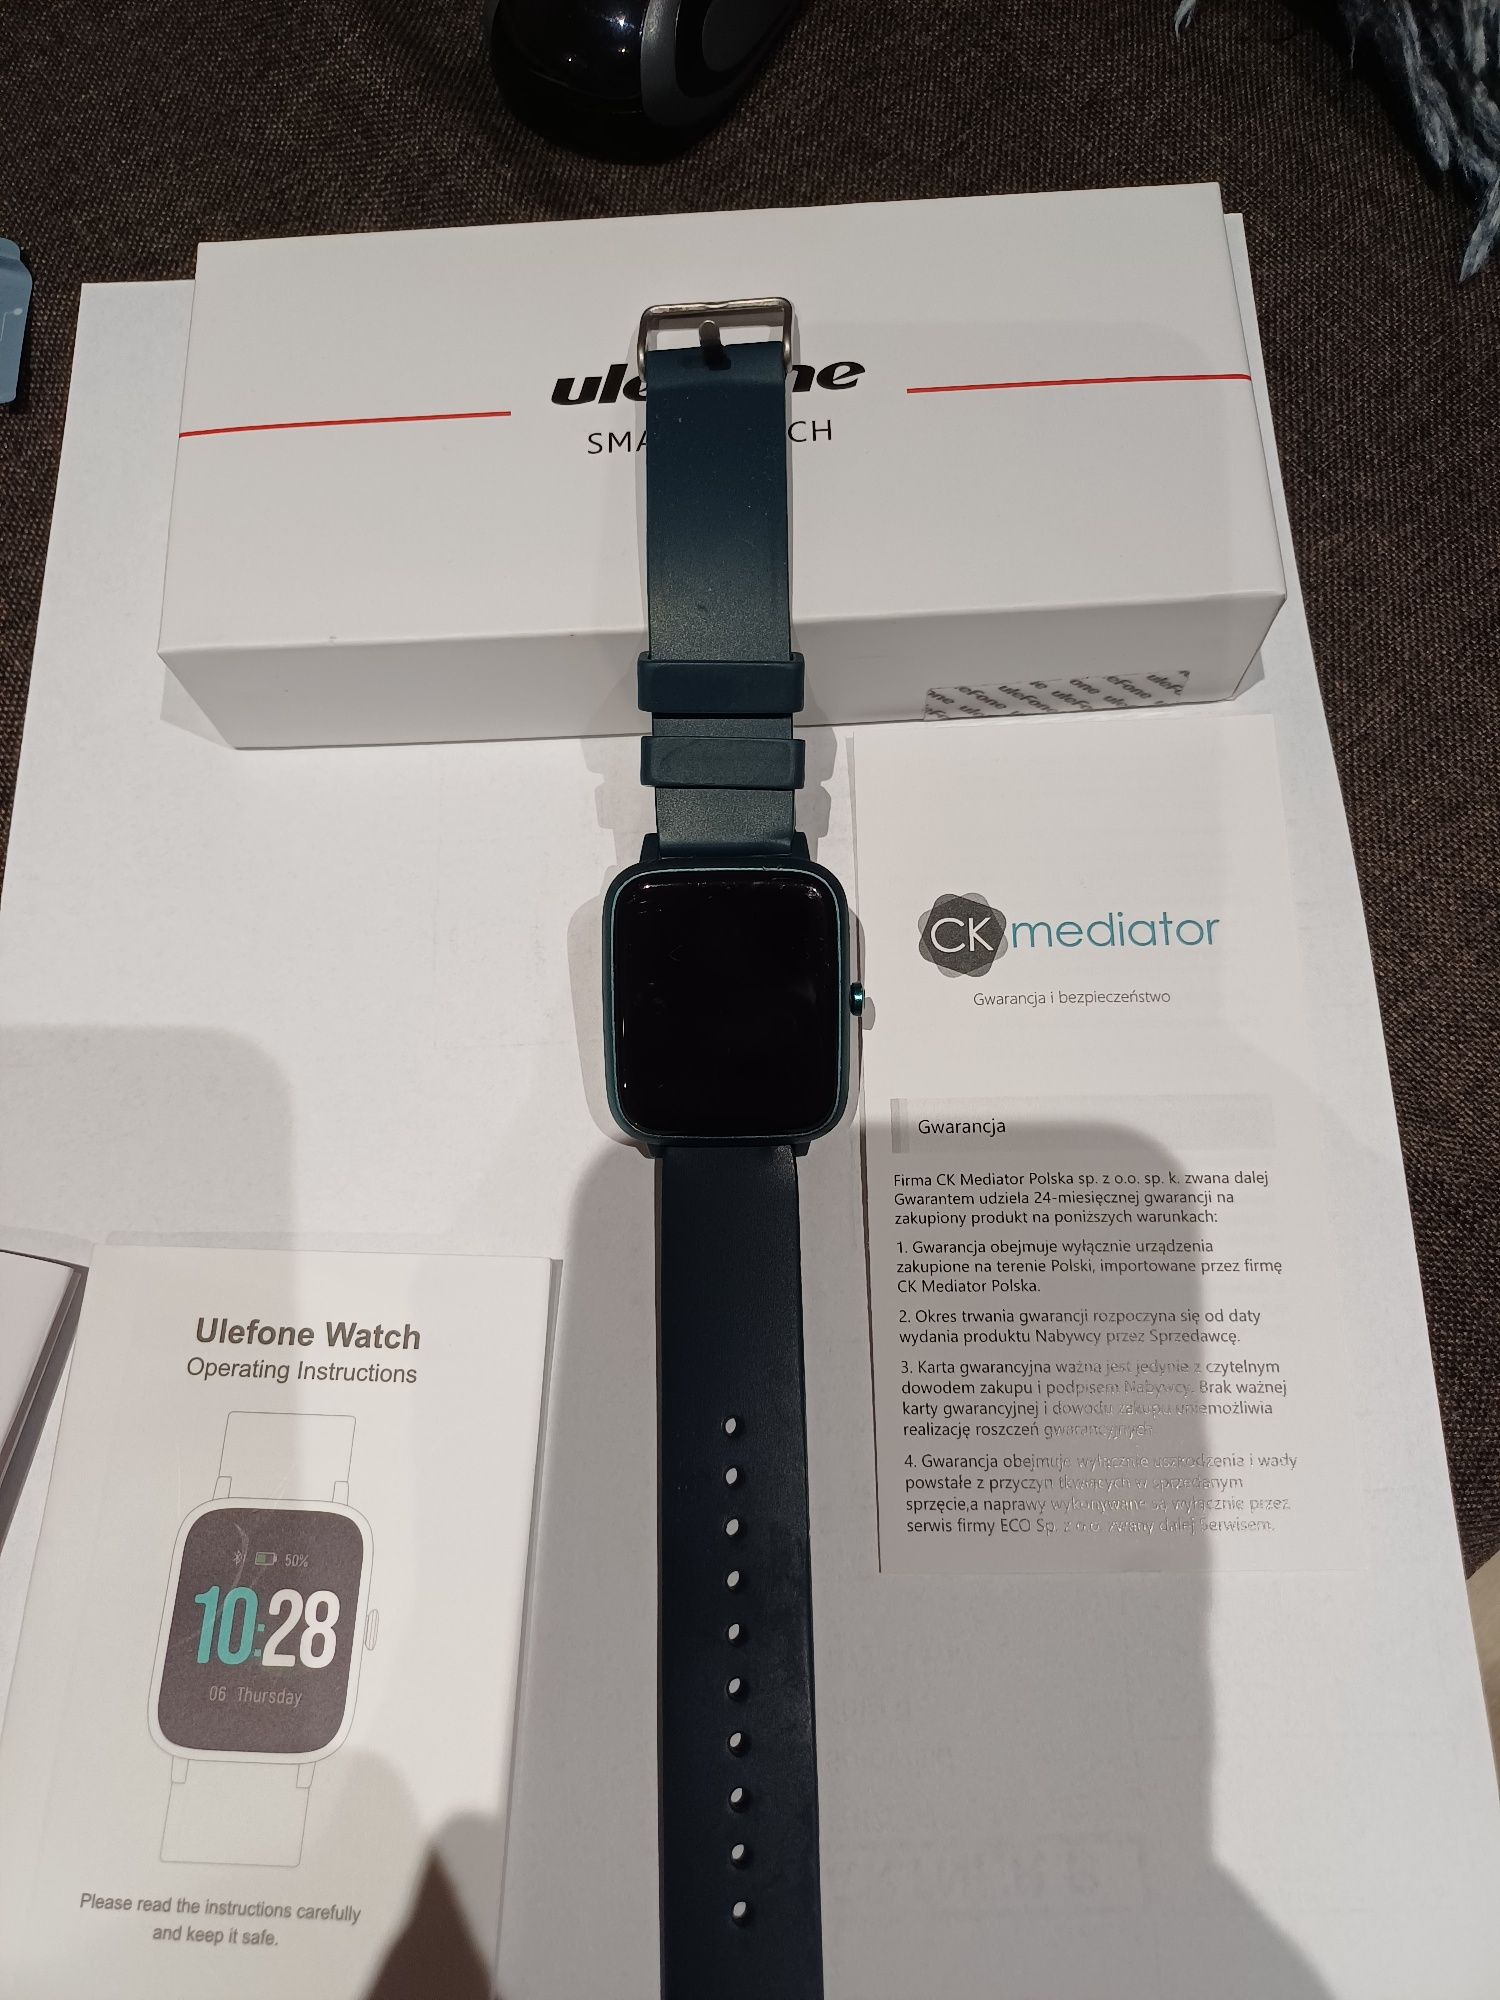 Ulefone smart watch